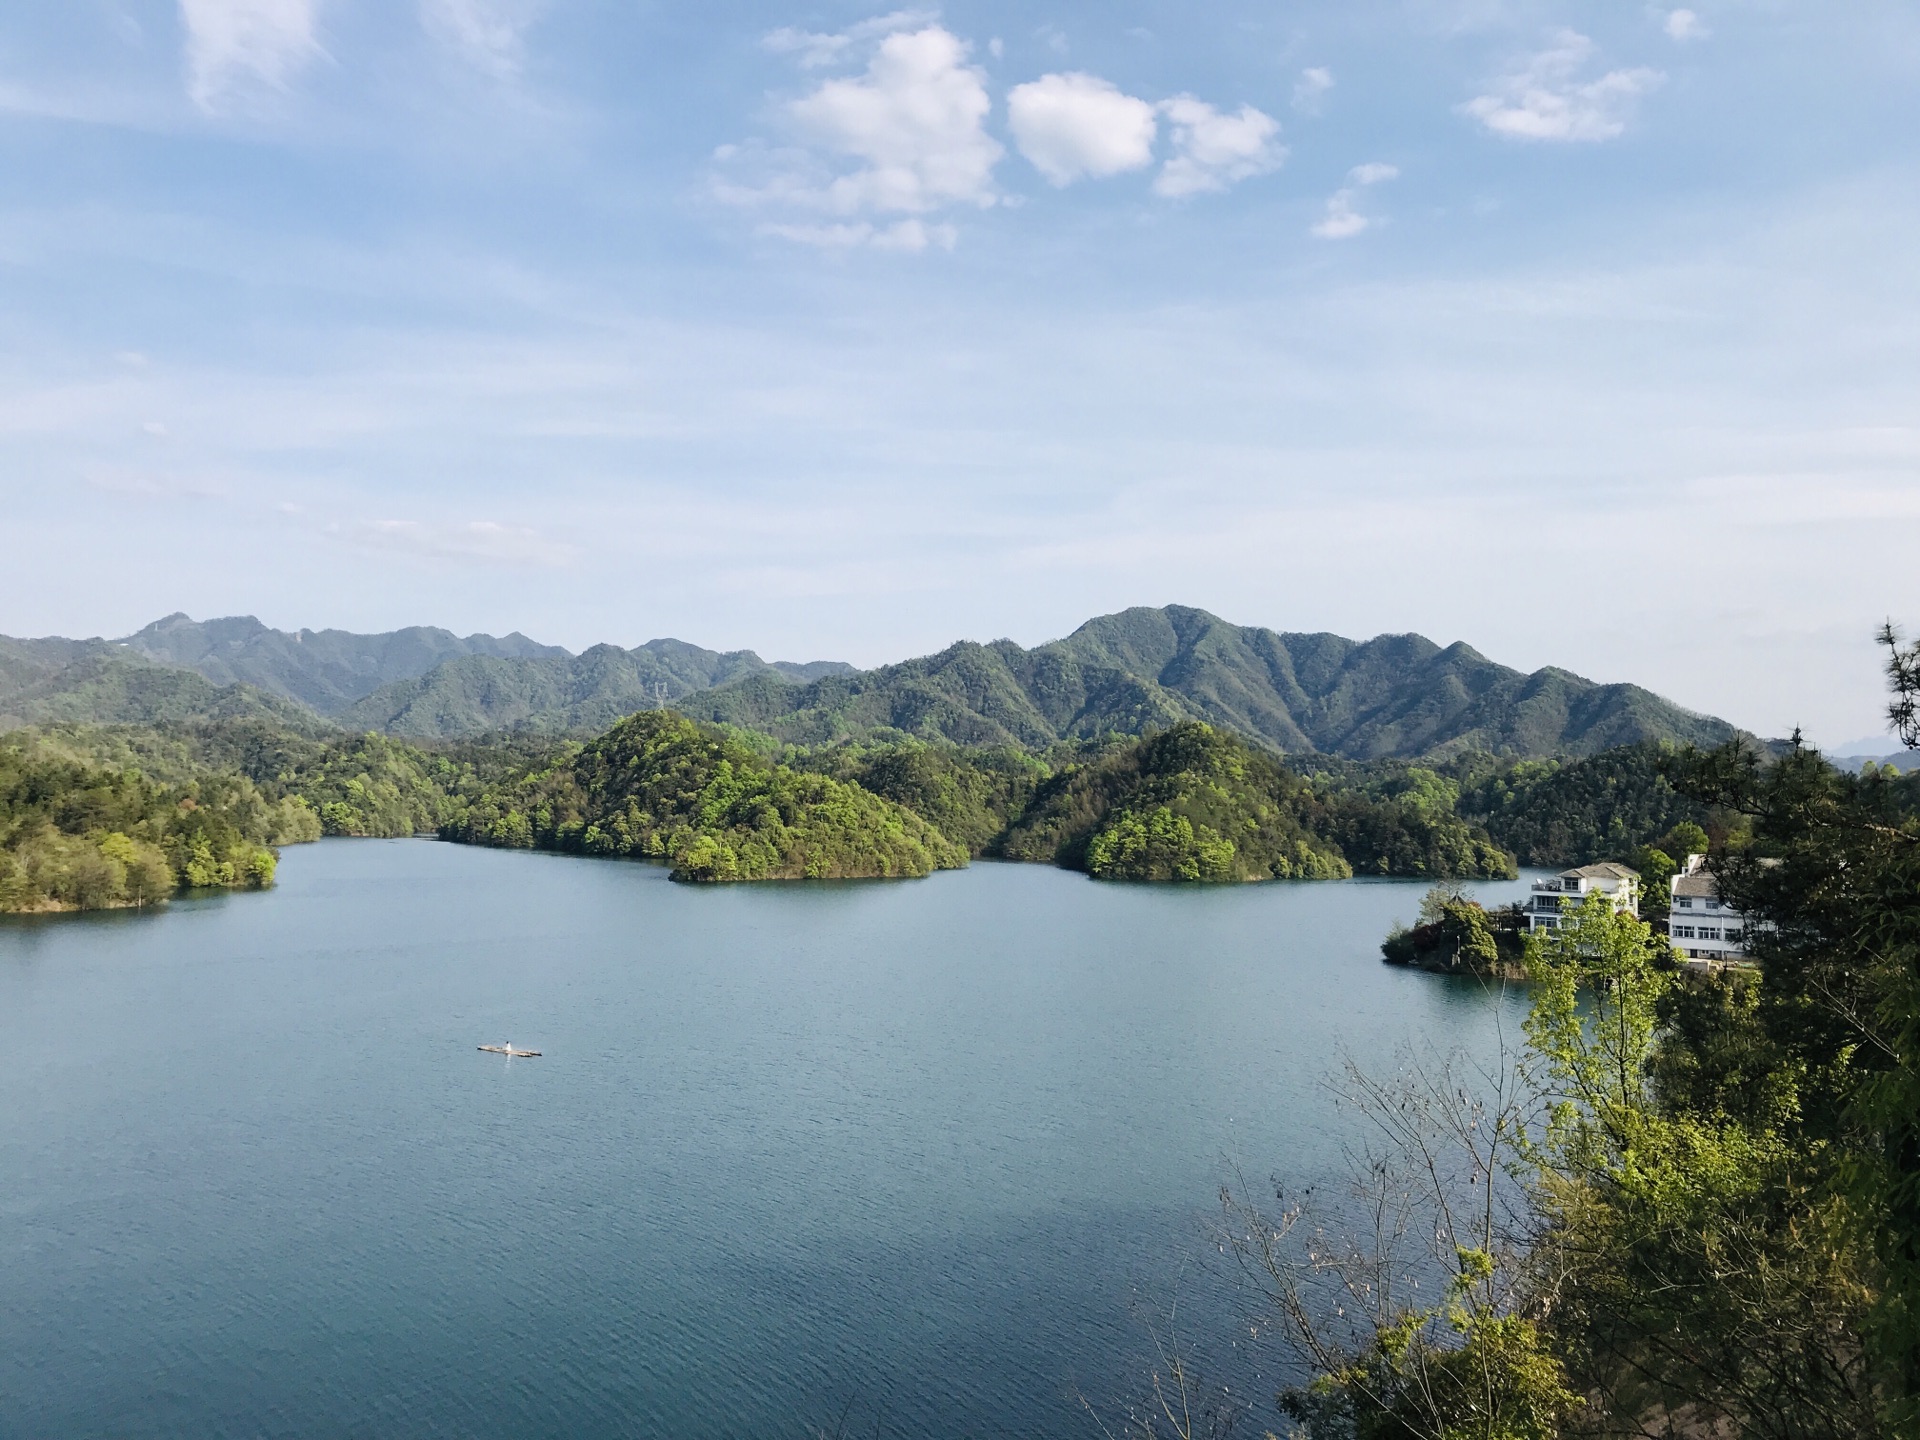 黄山太平湖与杨家寨-中关村在线摄影论坛